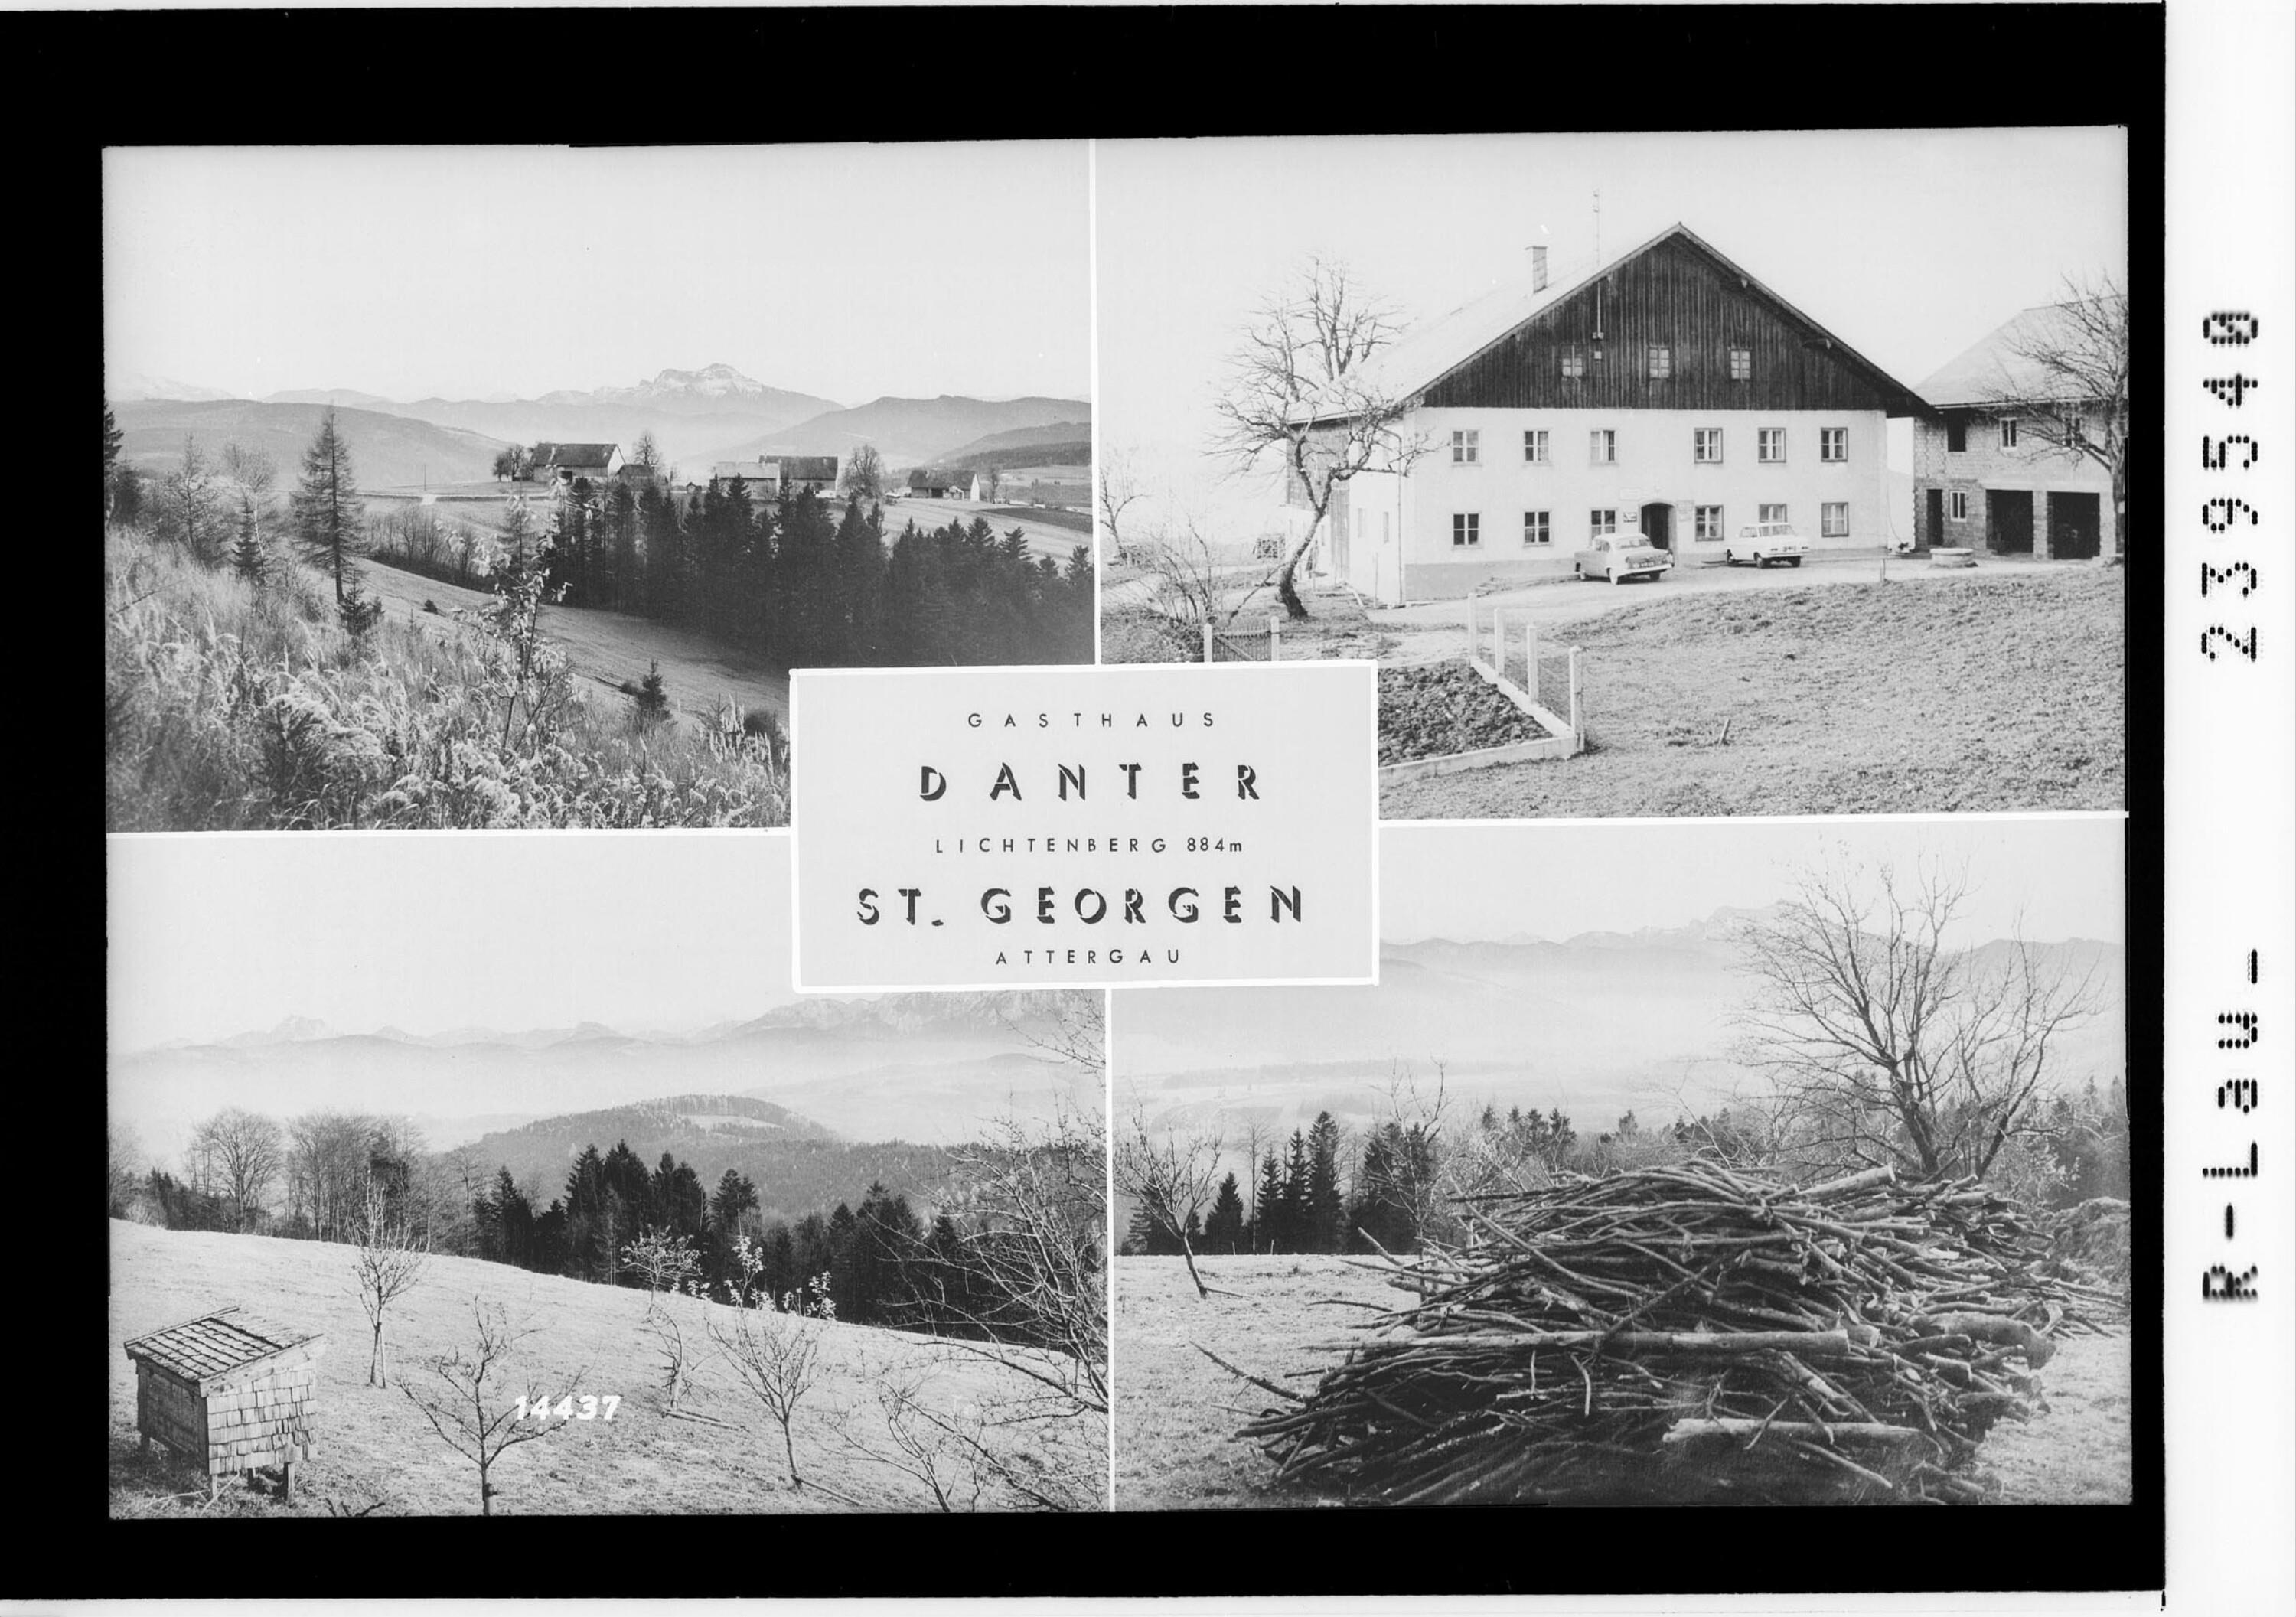 Gasthaus Danter - Lichtenberg 884 m / St. Georgen / Attergau></div>


    <hr>
    <div class=